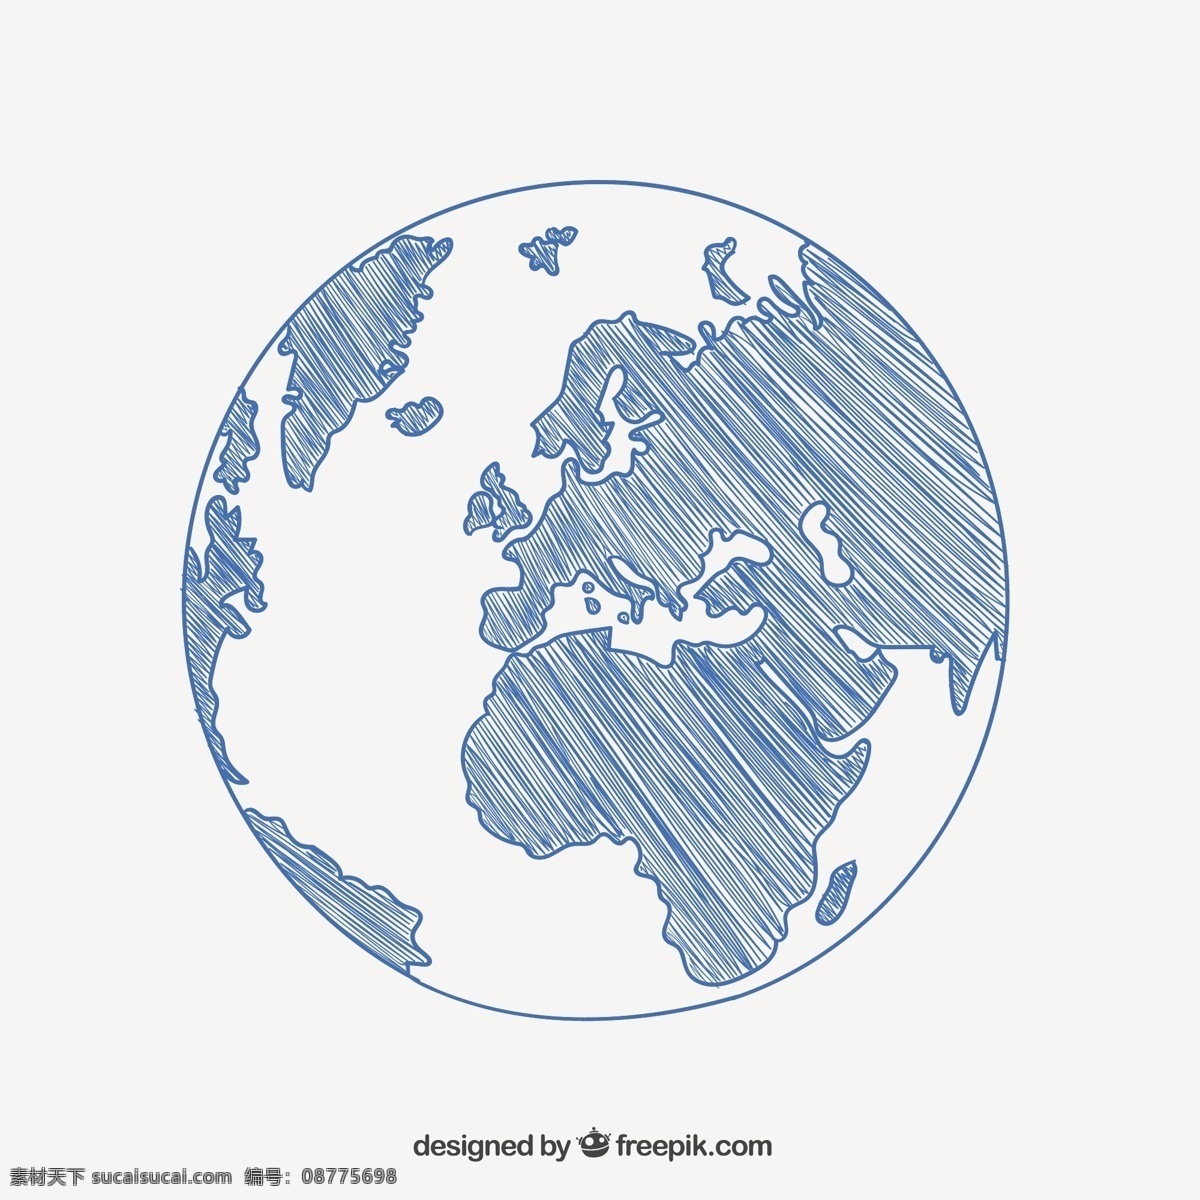 粗略的地球图 一方面 地图 地球 手绘 素描 绘画 全球性的 行星 绘制粗略 大陆 白色